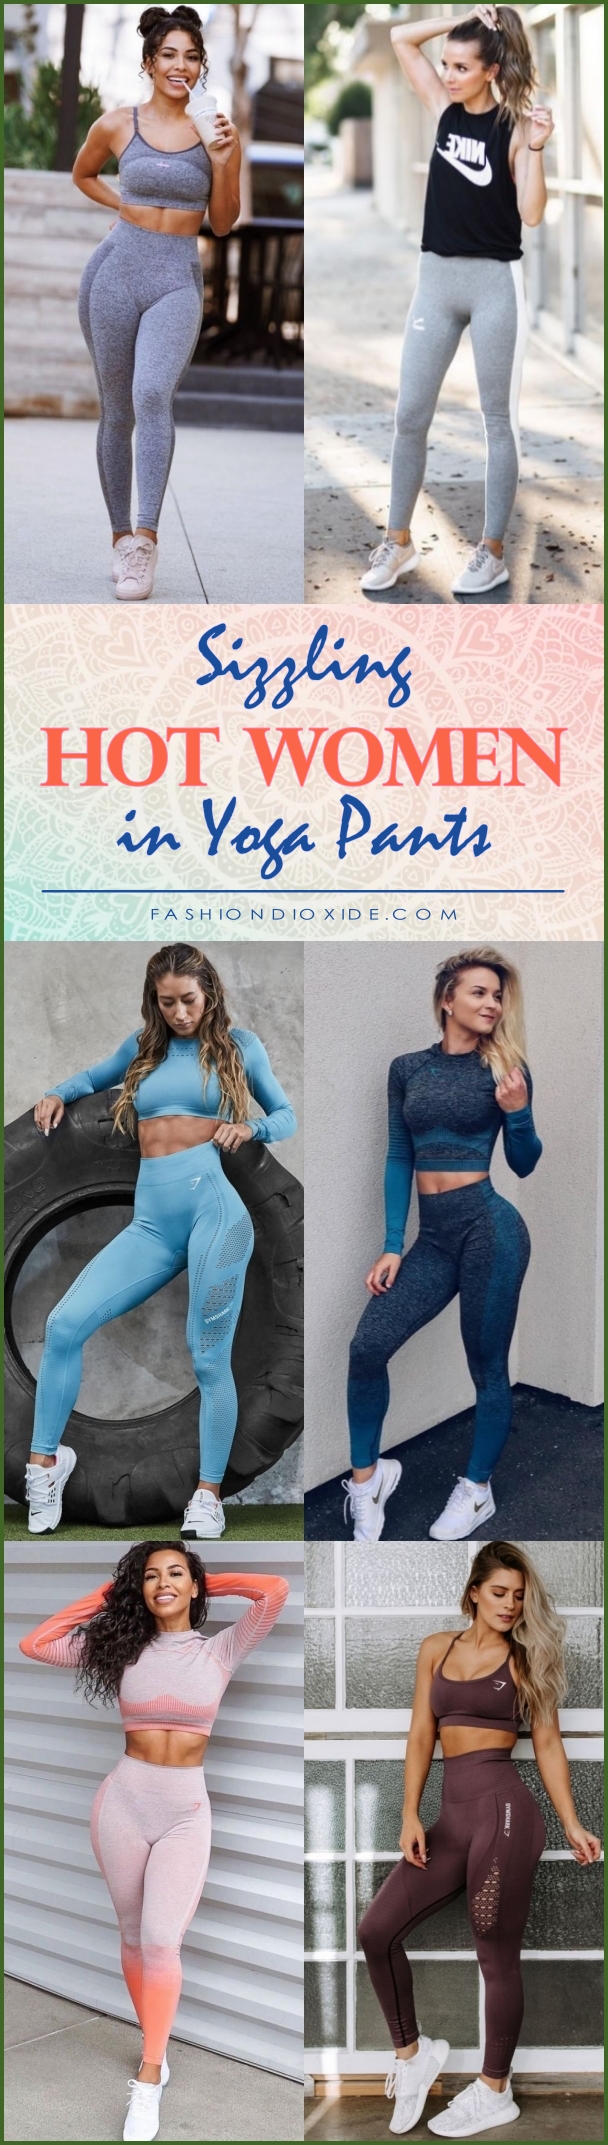 hot girls yoga pants